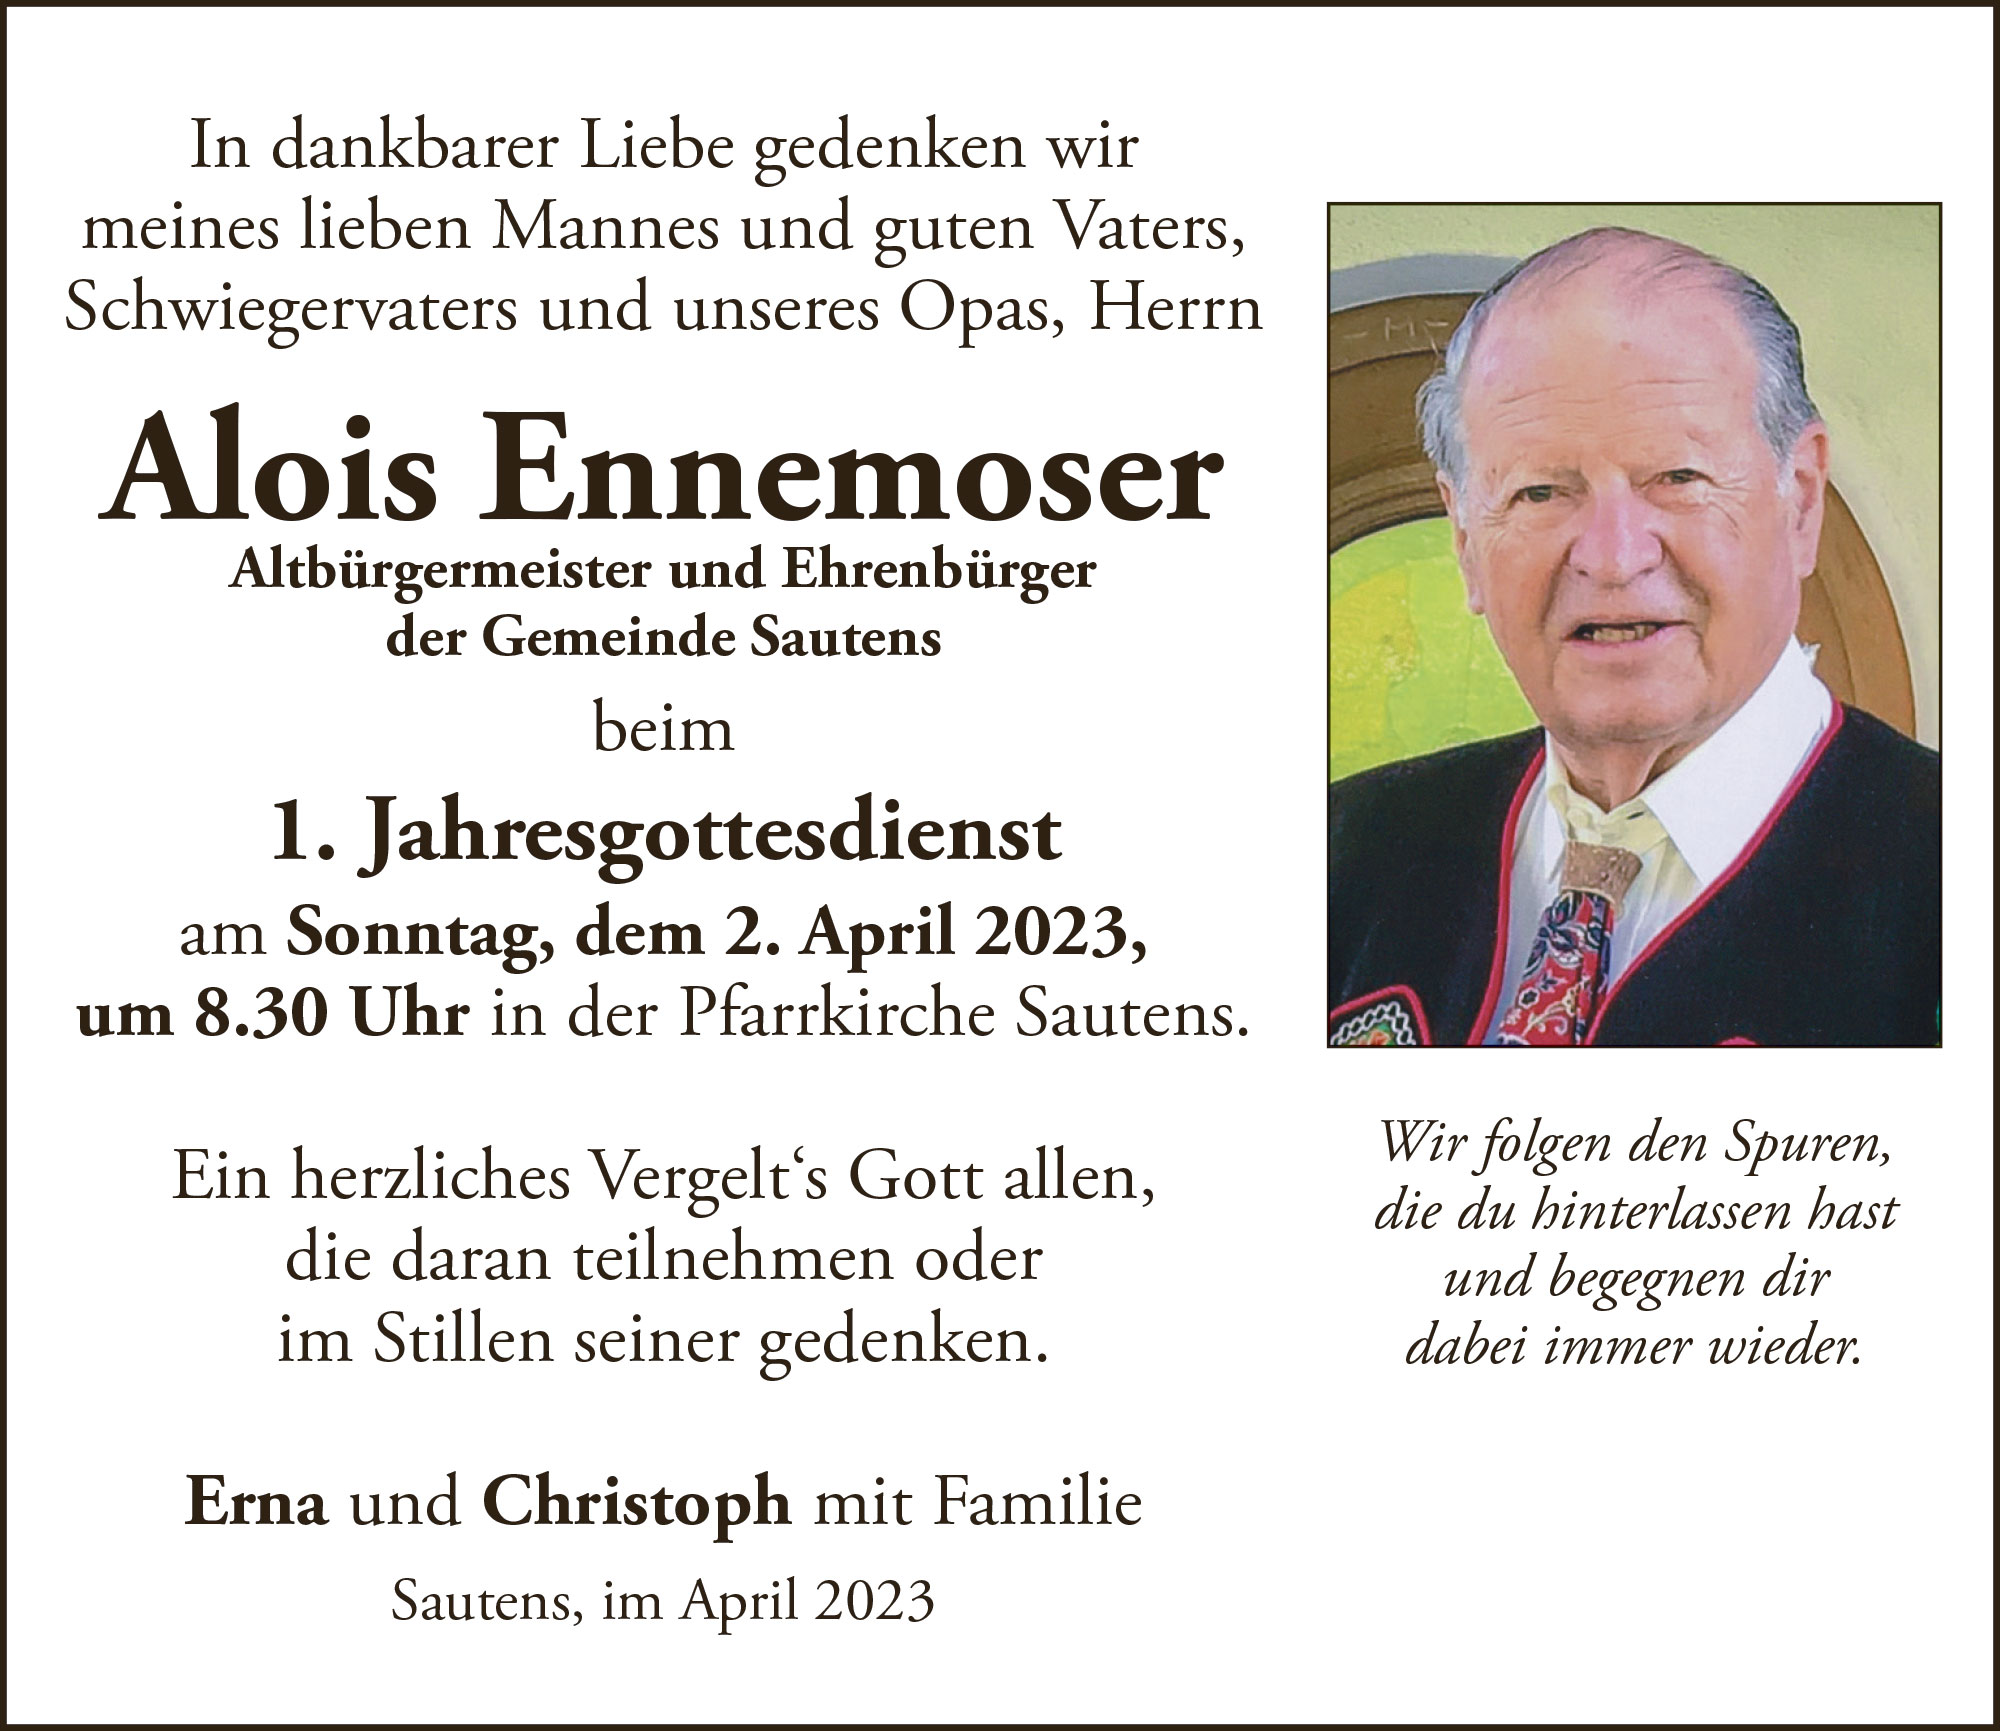 Alois Ennemoser